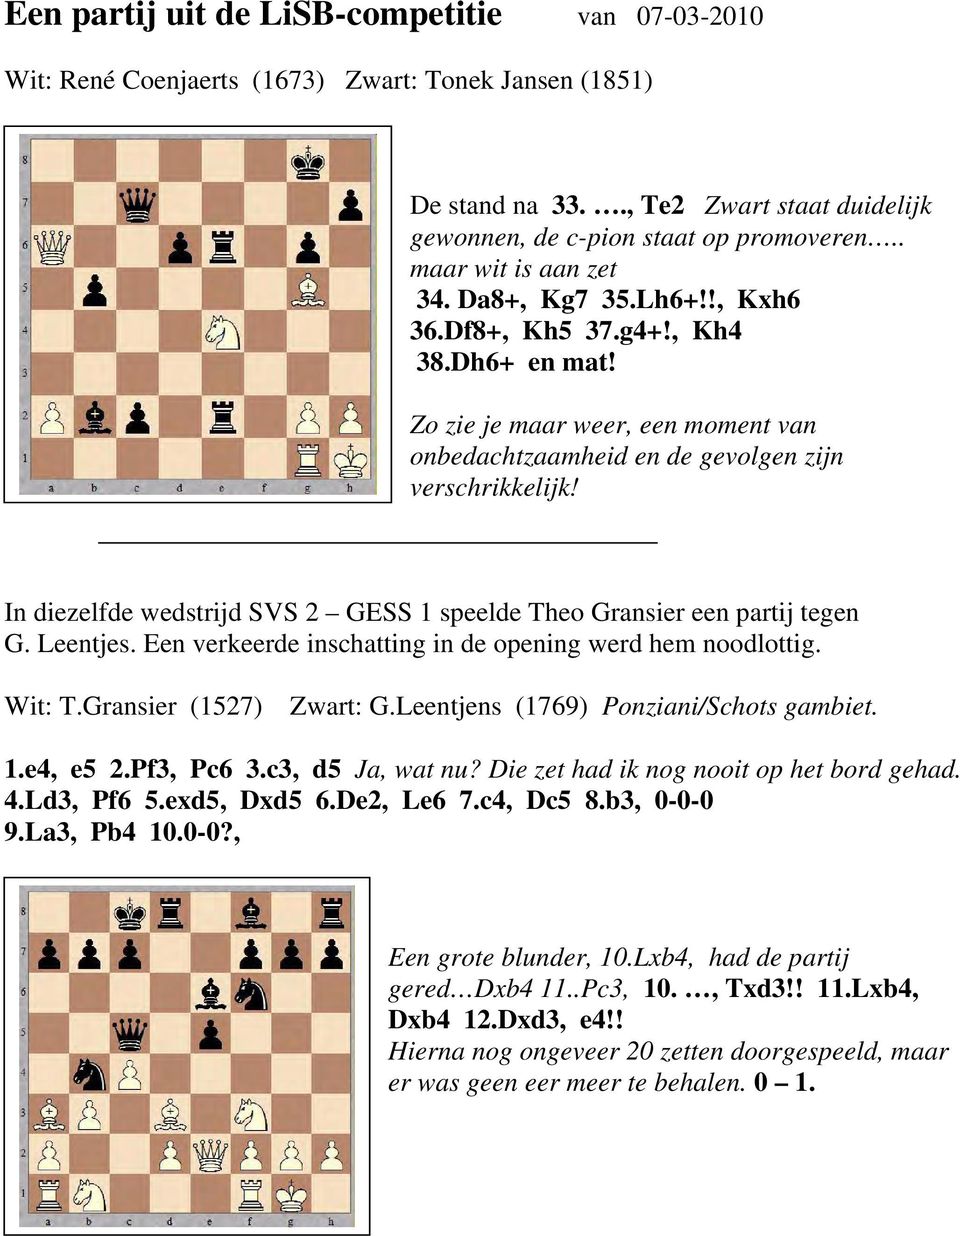 In diezelfde wedstrijd SVS 2 GESS 1 speelde Theo Gransier een partij tegen G. Leentjes. Een verkeerde inschatting in de opening werd hem noodlottig. Wit: T.Gransier (1527) Zwart: G.